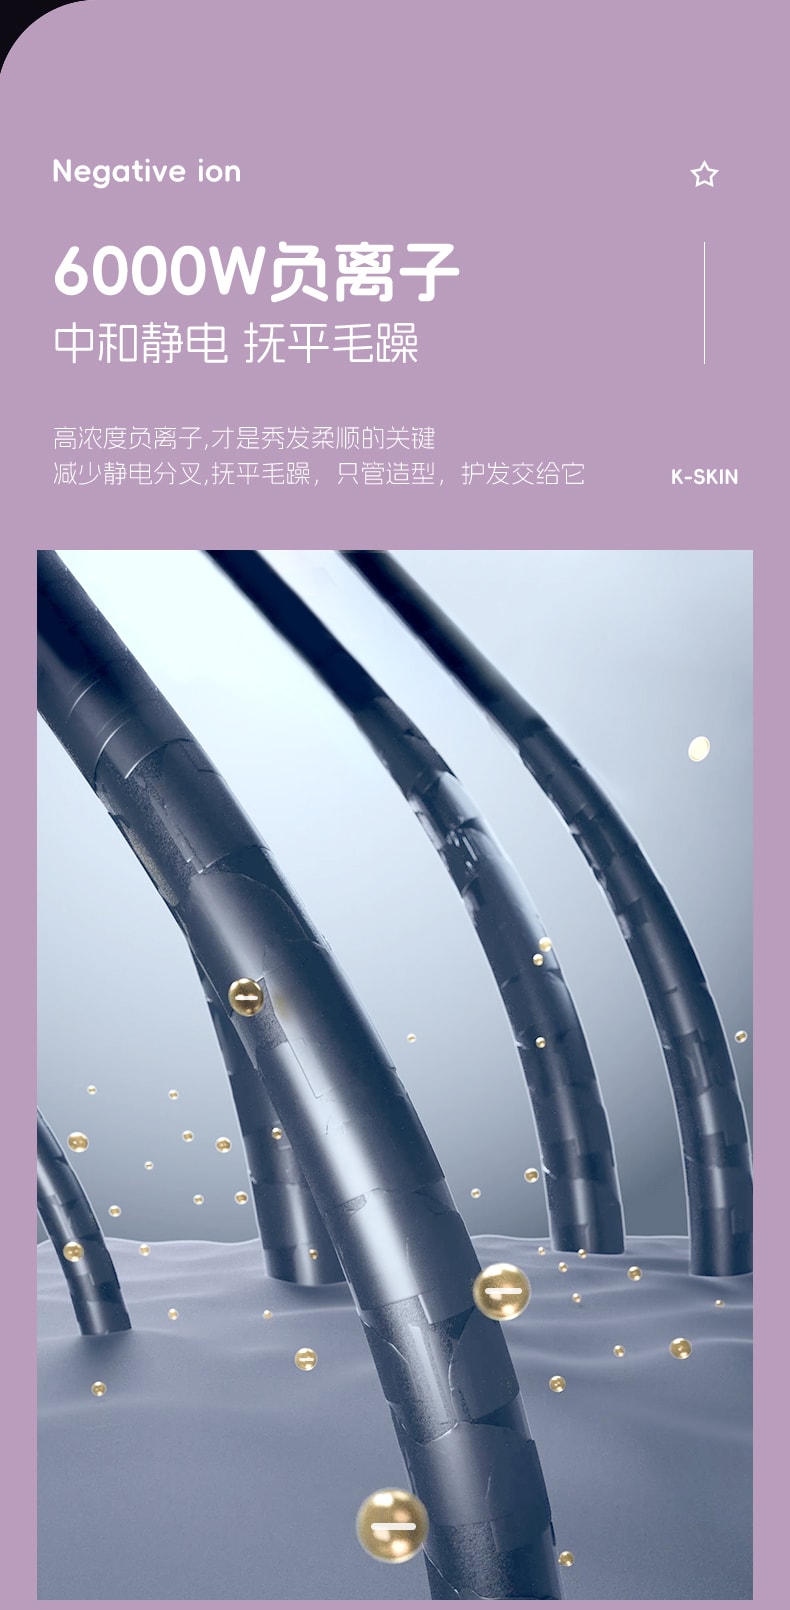 中國 K·SKIN金米 無線直髮梳 負離子護髮 便攜美 兩用髮梳 電梳子 直板夾 防靜電 KD382S 1台